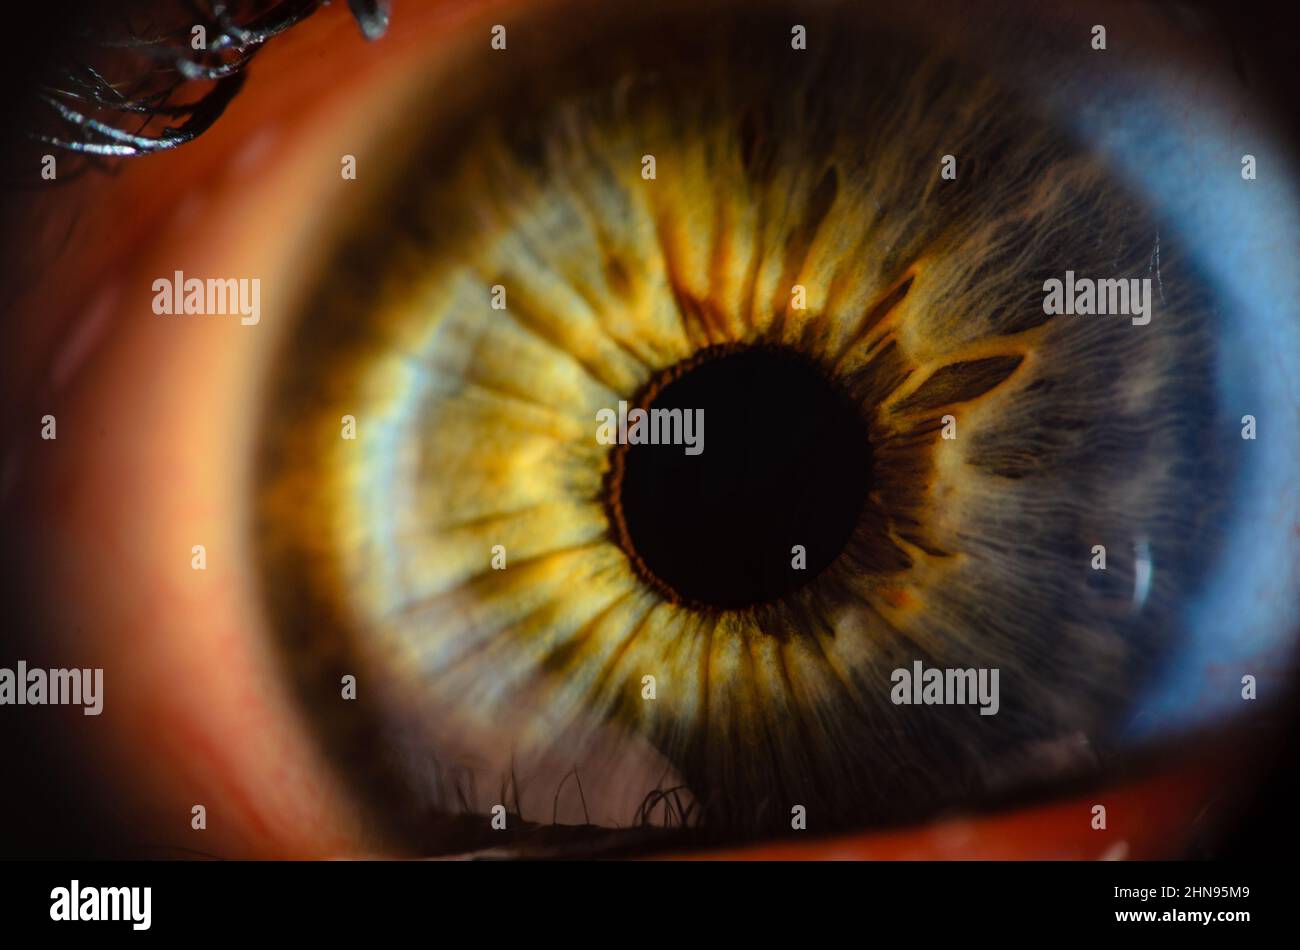 Primo piano macro foto dell'occhio umano. Dettaglio dell'occhio umano in primo piano con profondità di campo ridotta. Foto Stock